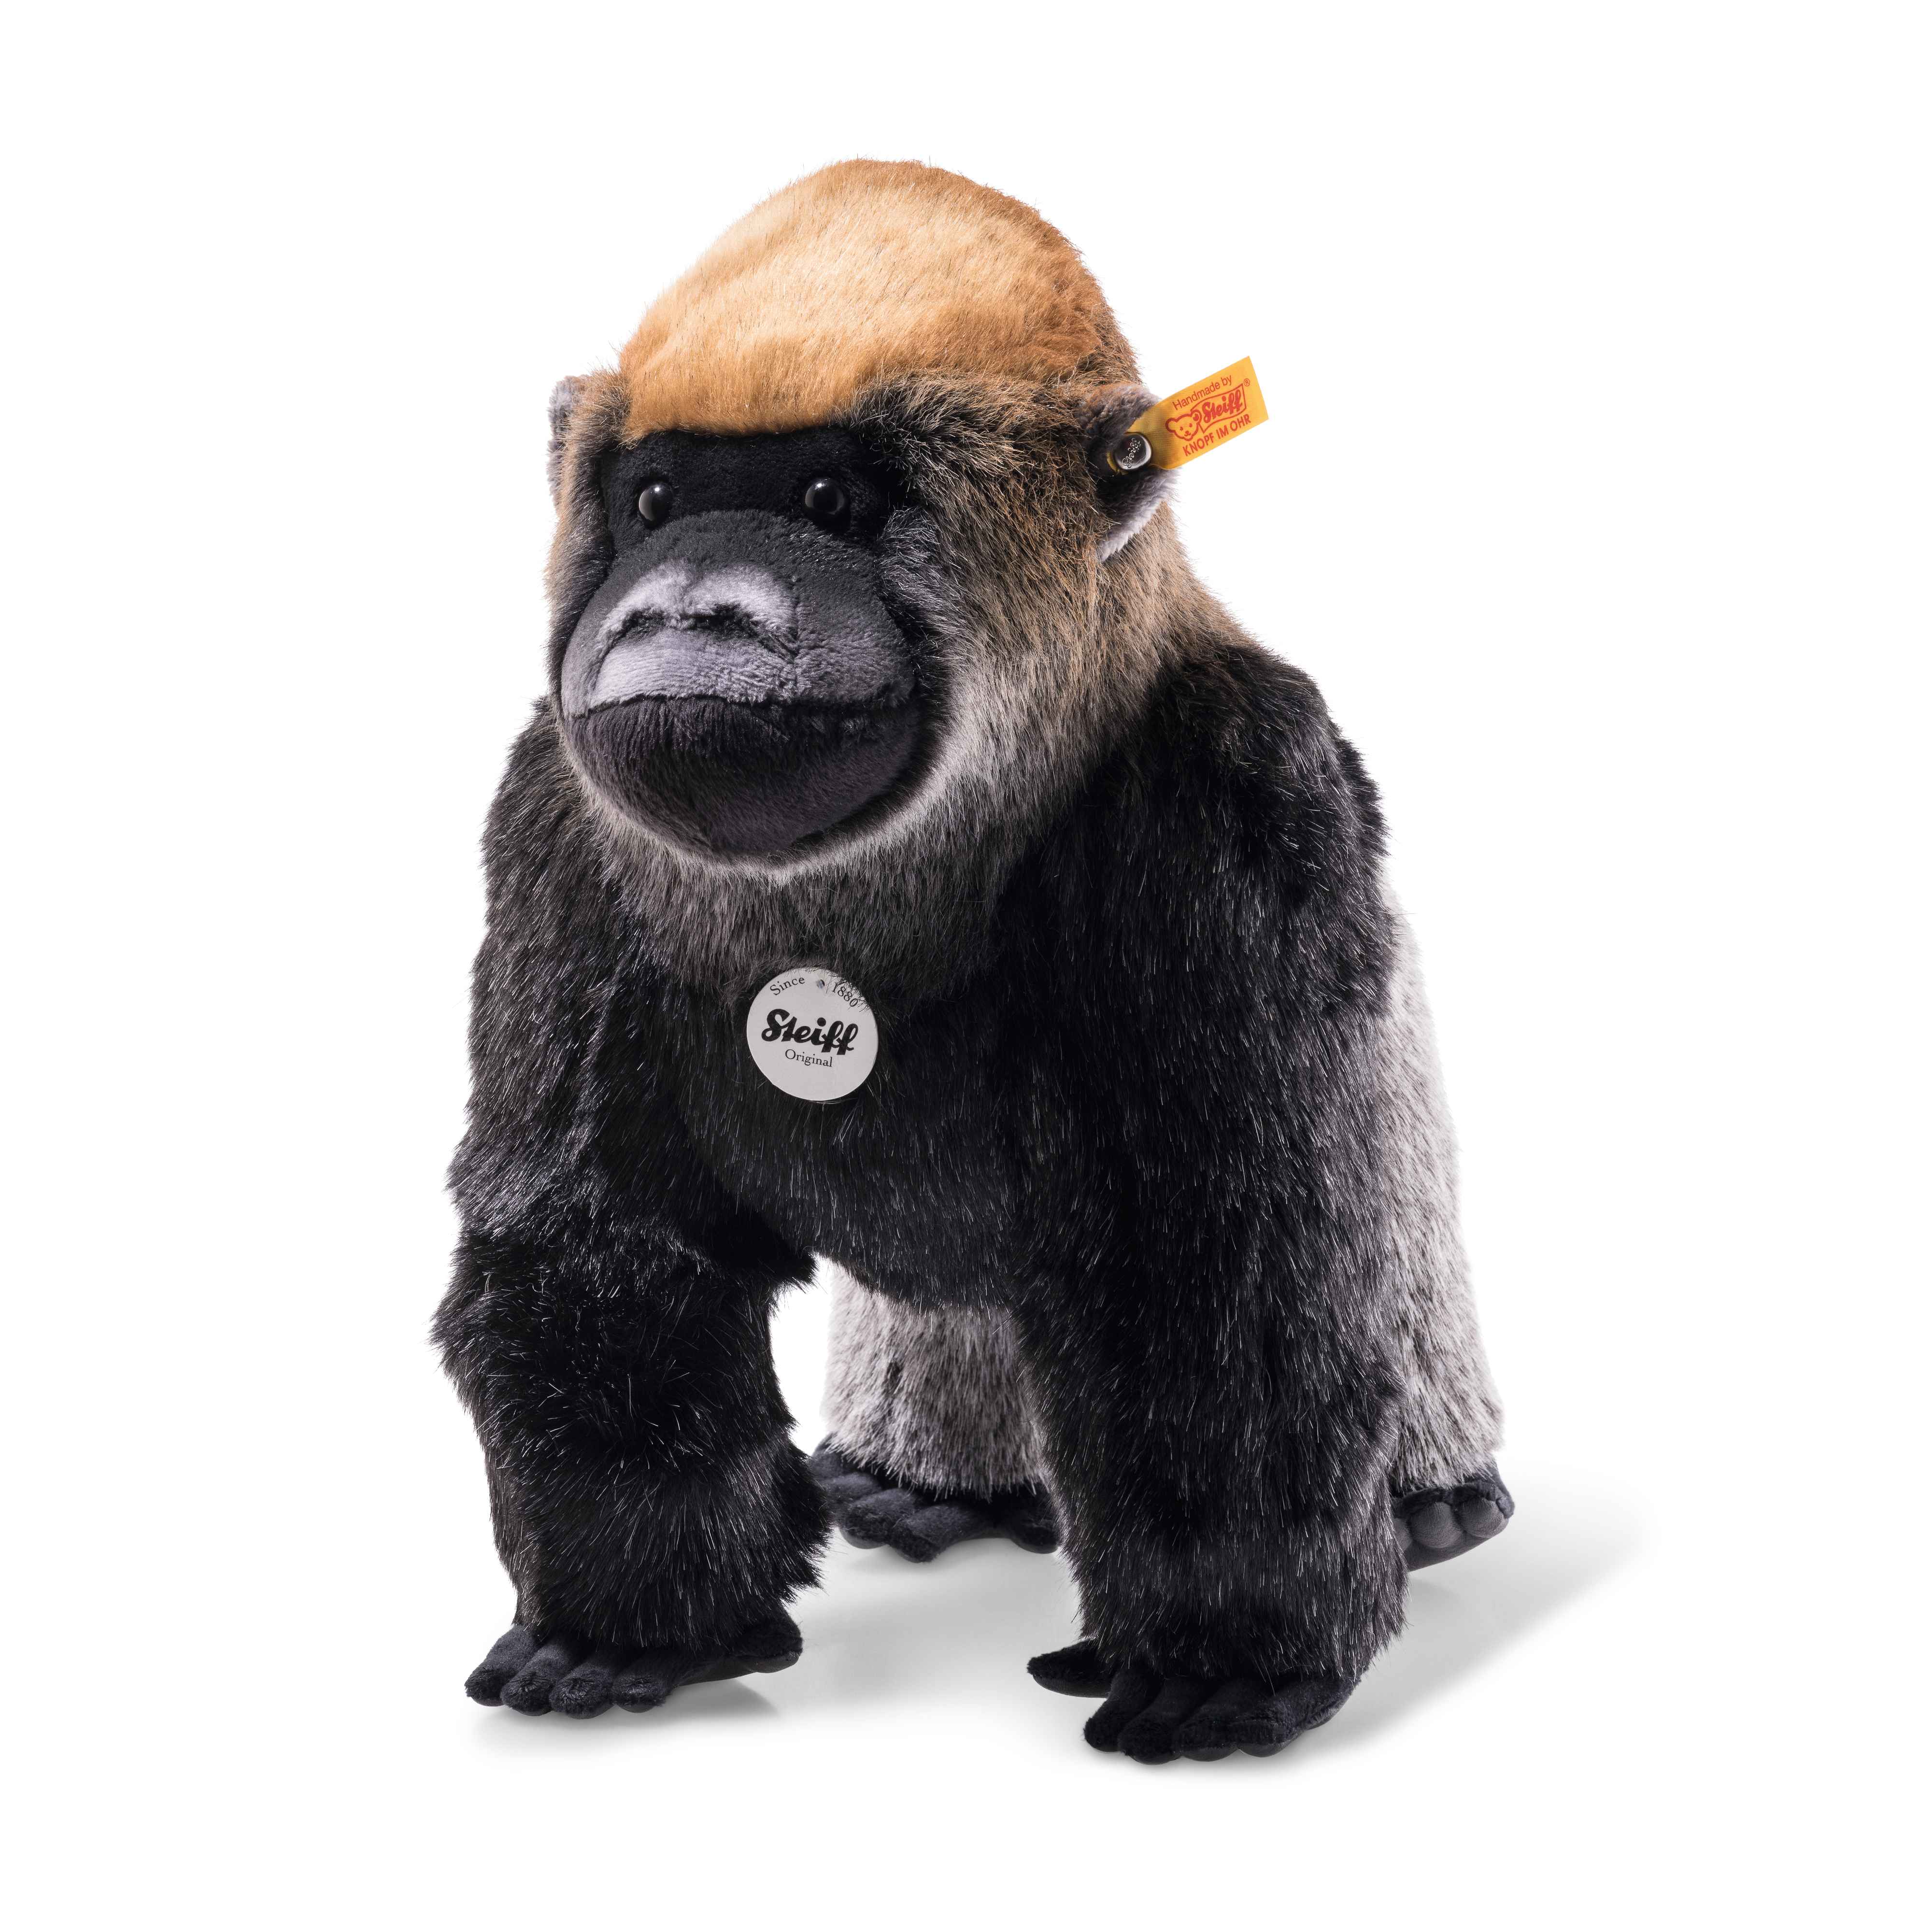 Steiff wճ}: Boogie gorilla